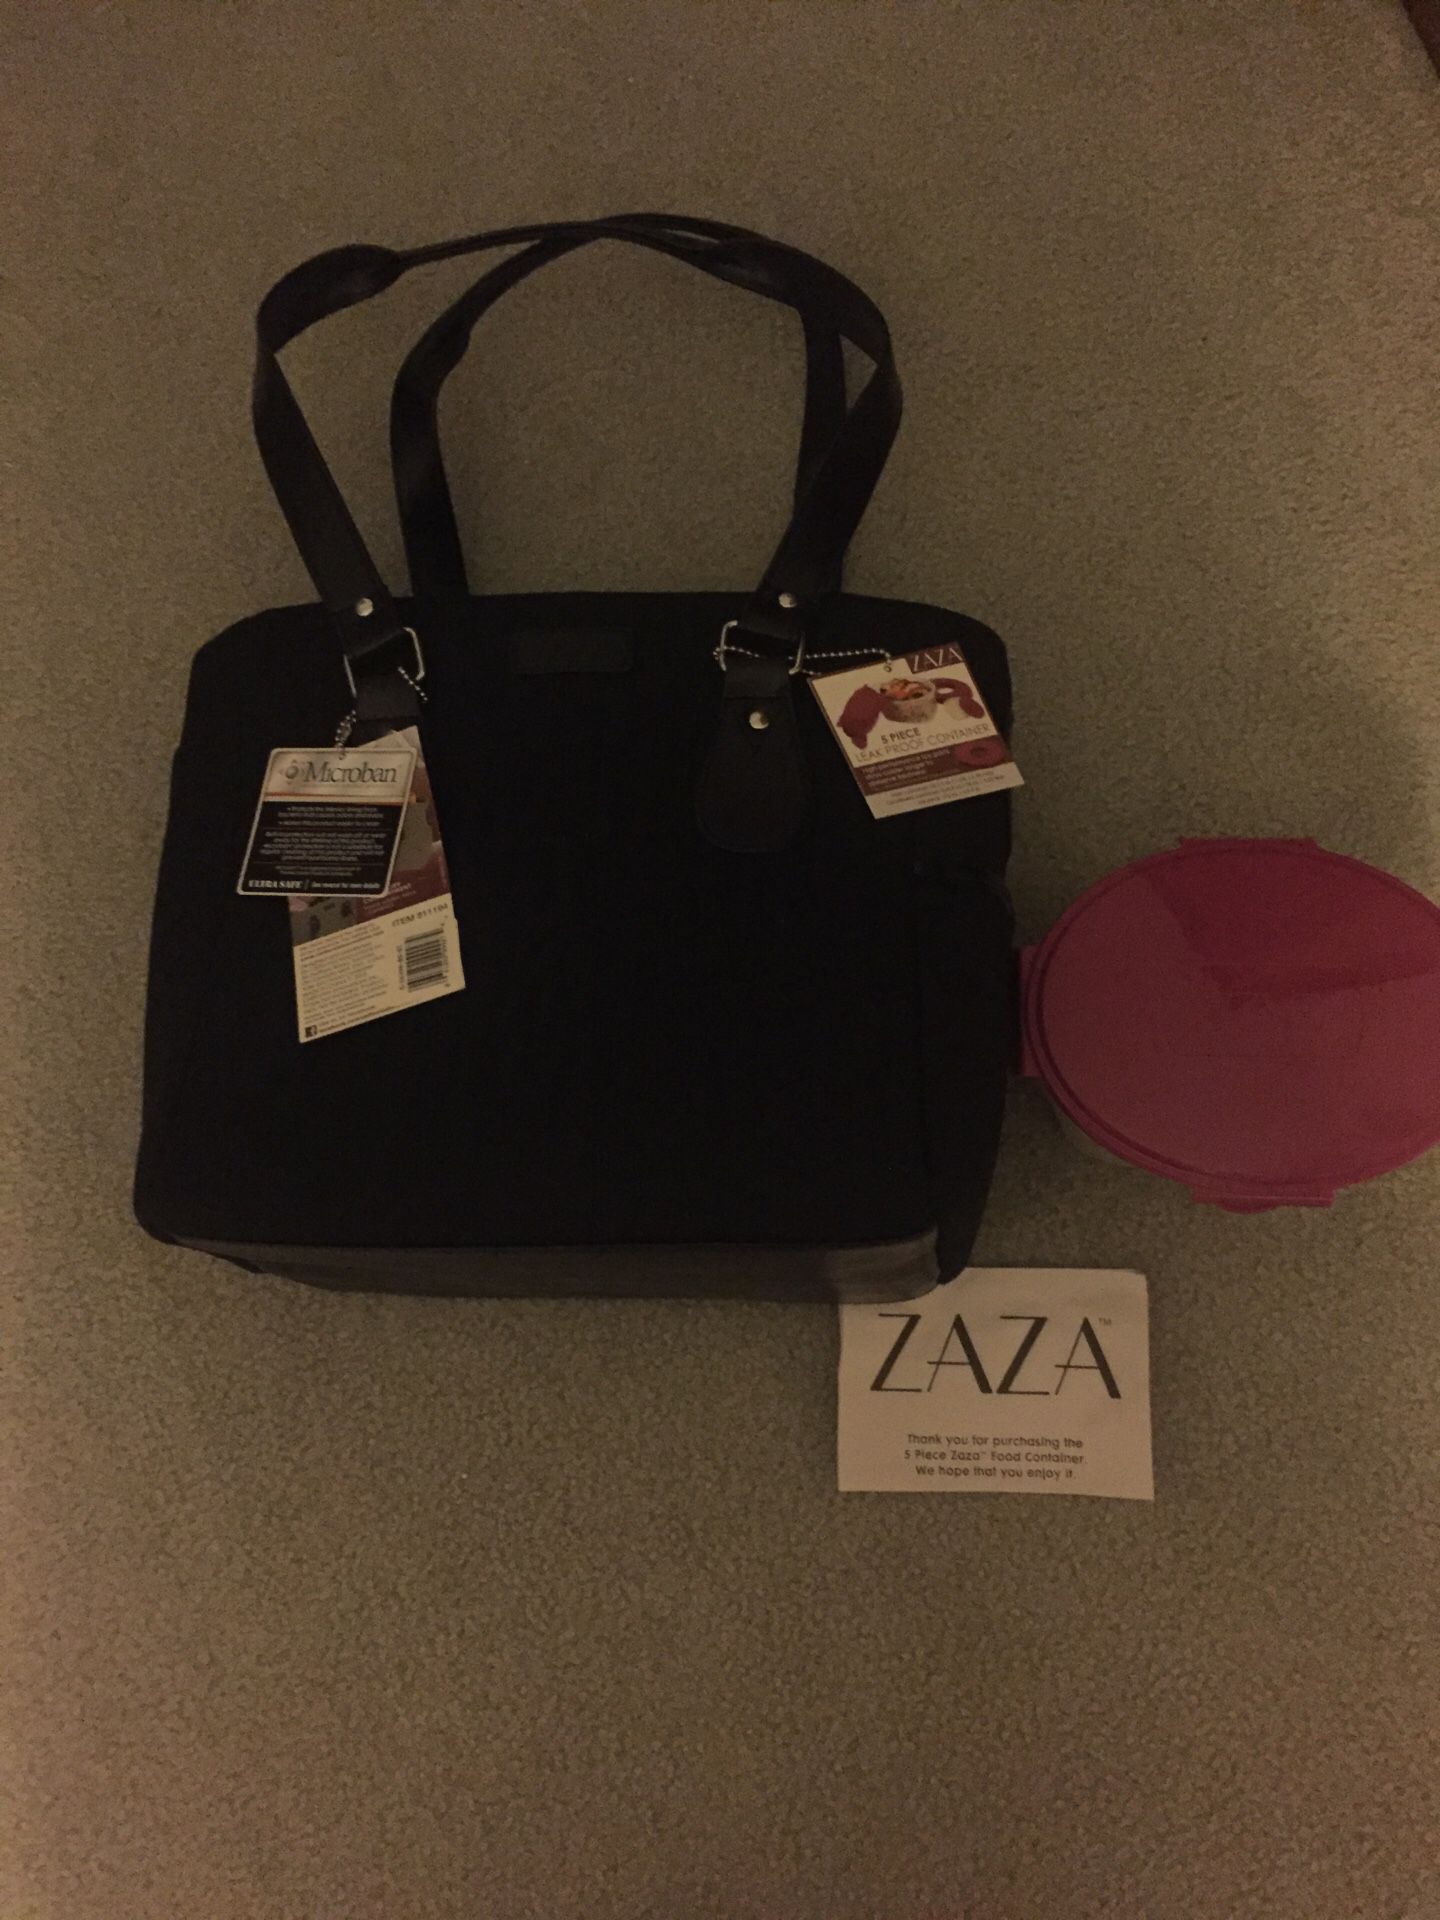 Zara storage bag